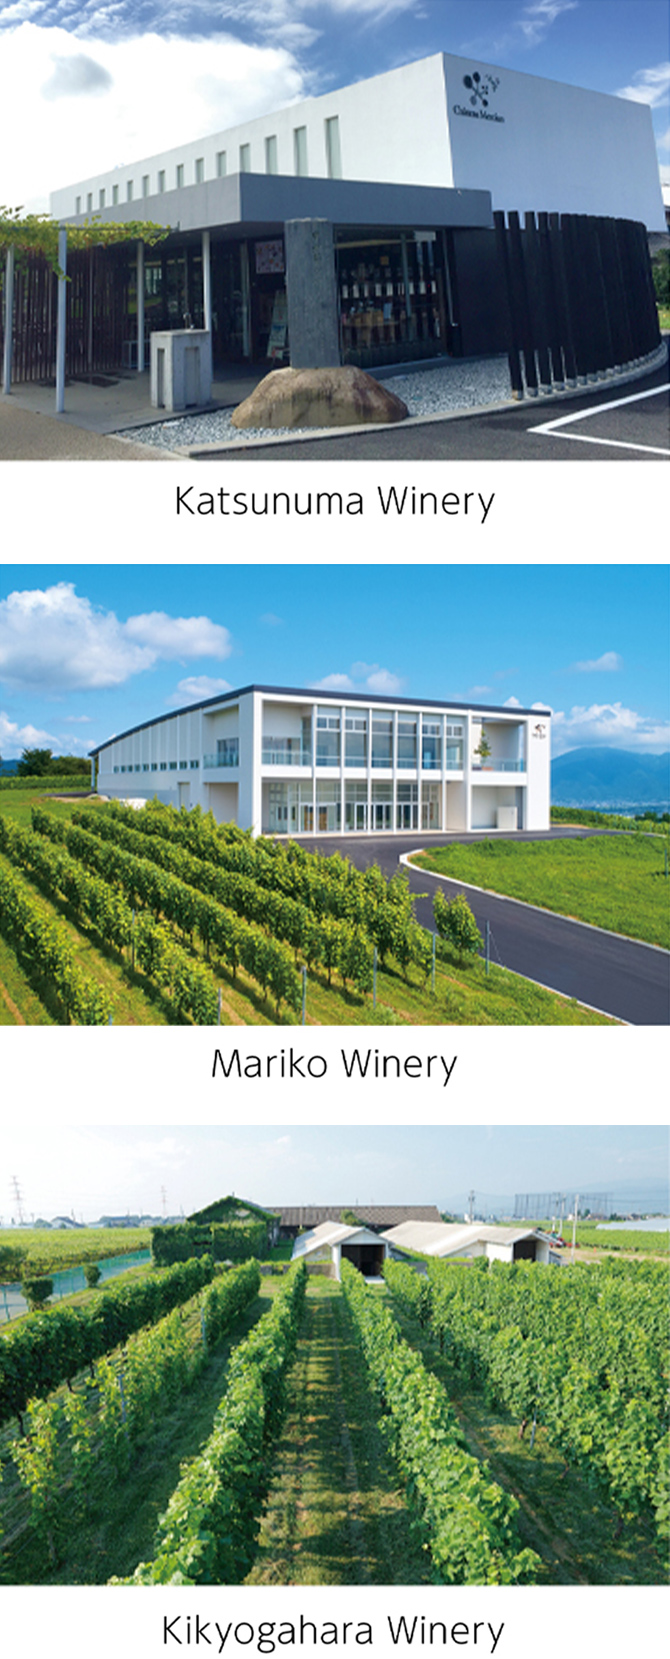 Image: Katsunuma Winery, Mariko Winery, Kikyogahara Winery